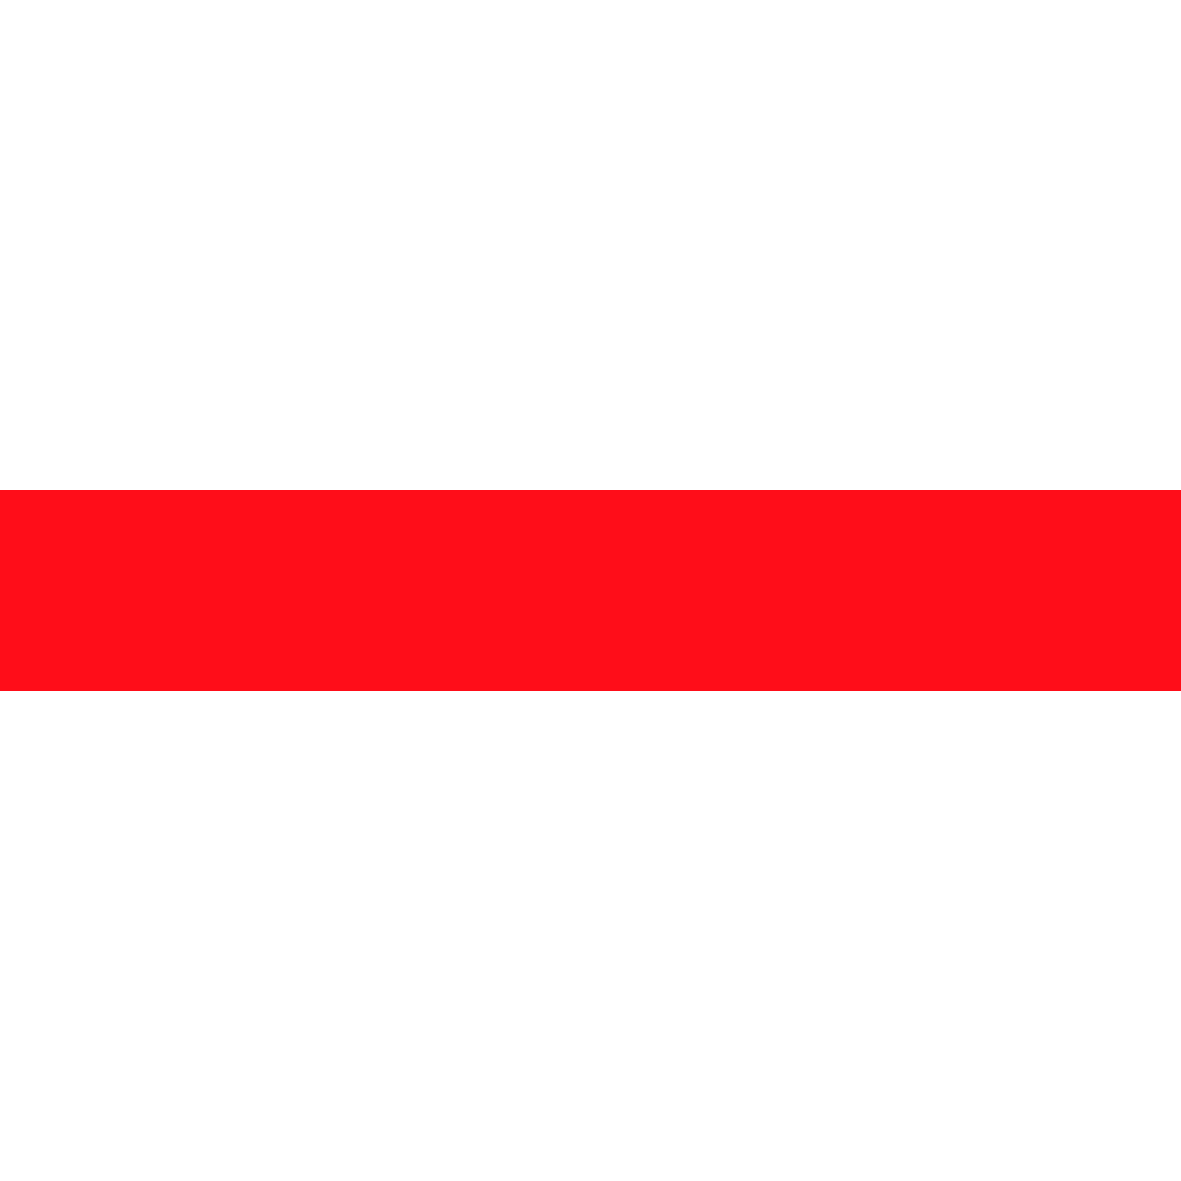 Gravotherm Platte für die Gravur - Weisse Deckschicht mit roter Gravur